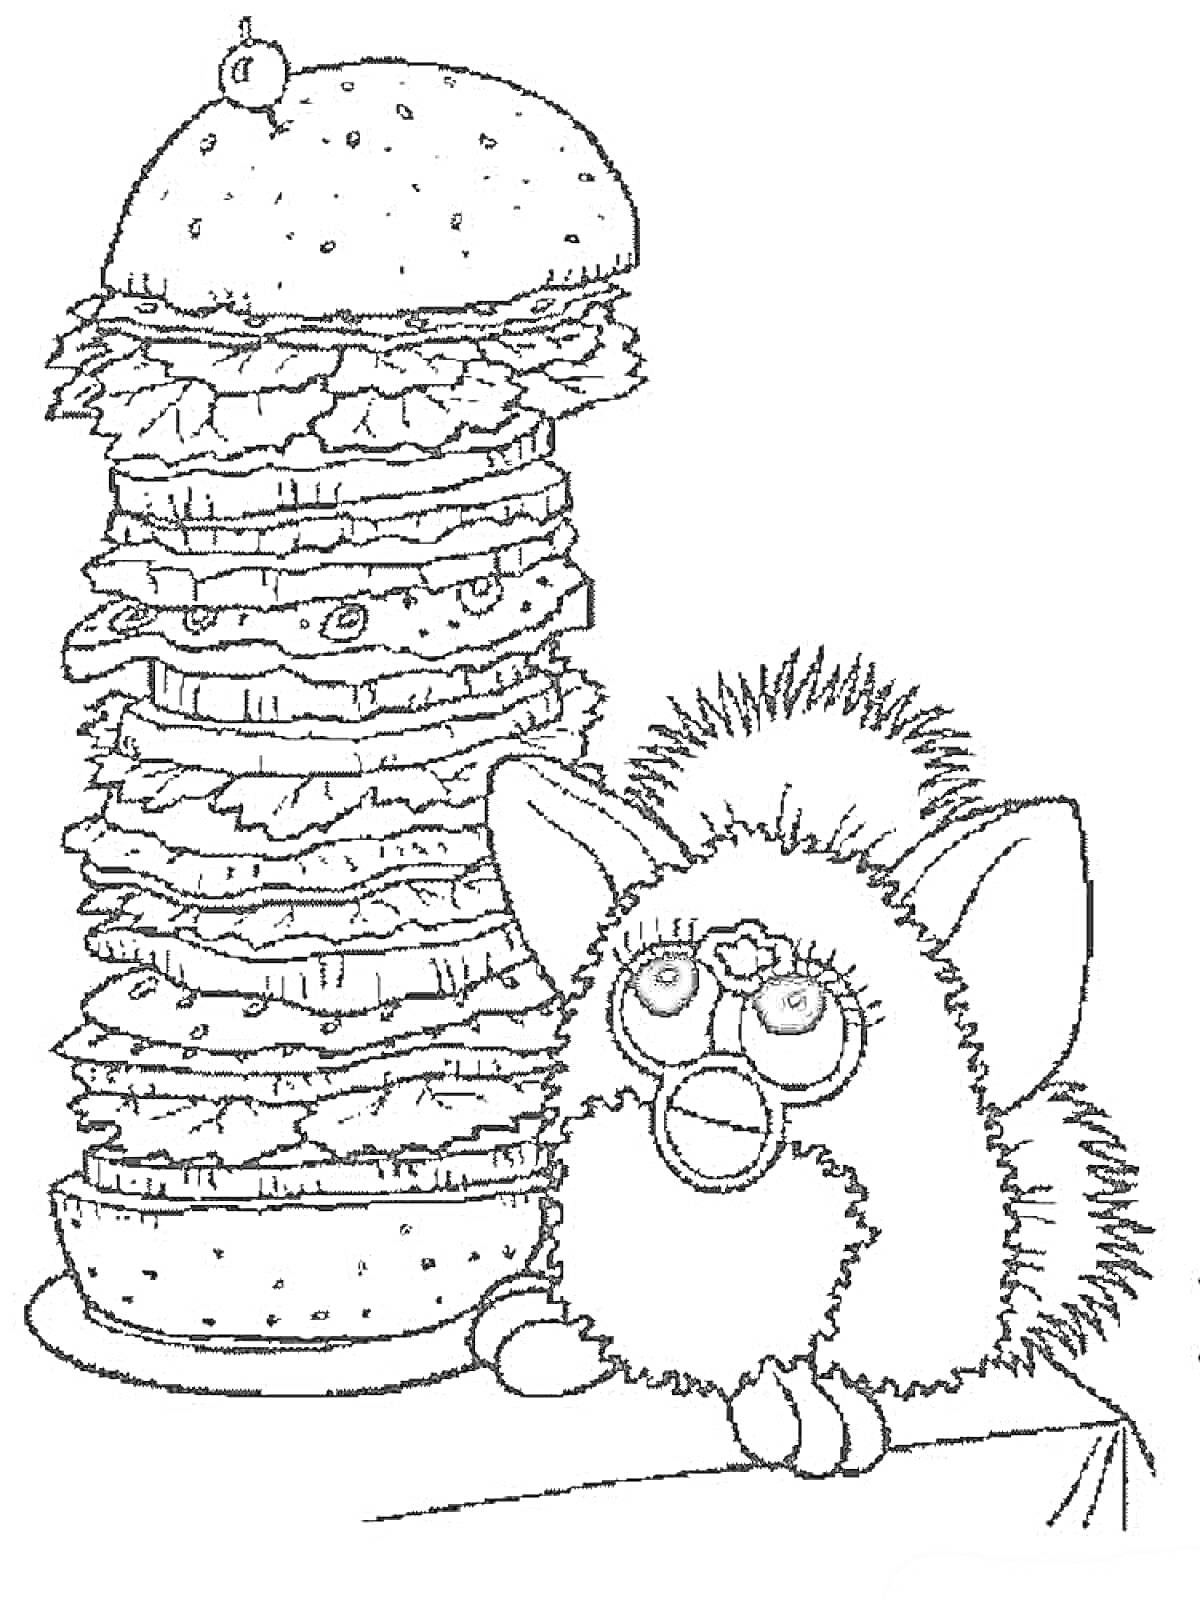 Раскраска Многоярусный бутерброд на тарелке и волосыстое существо с большими глазами